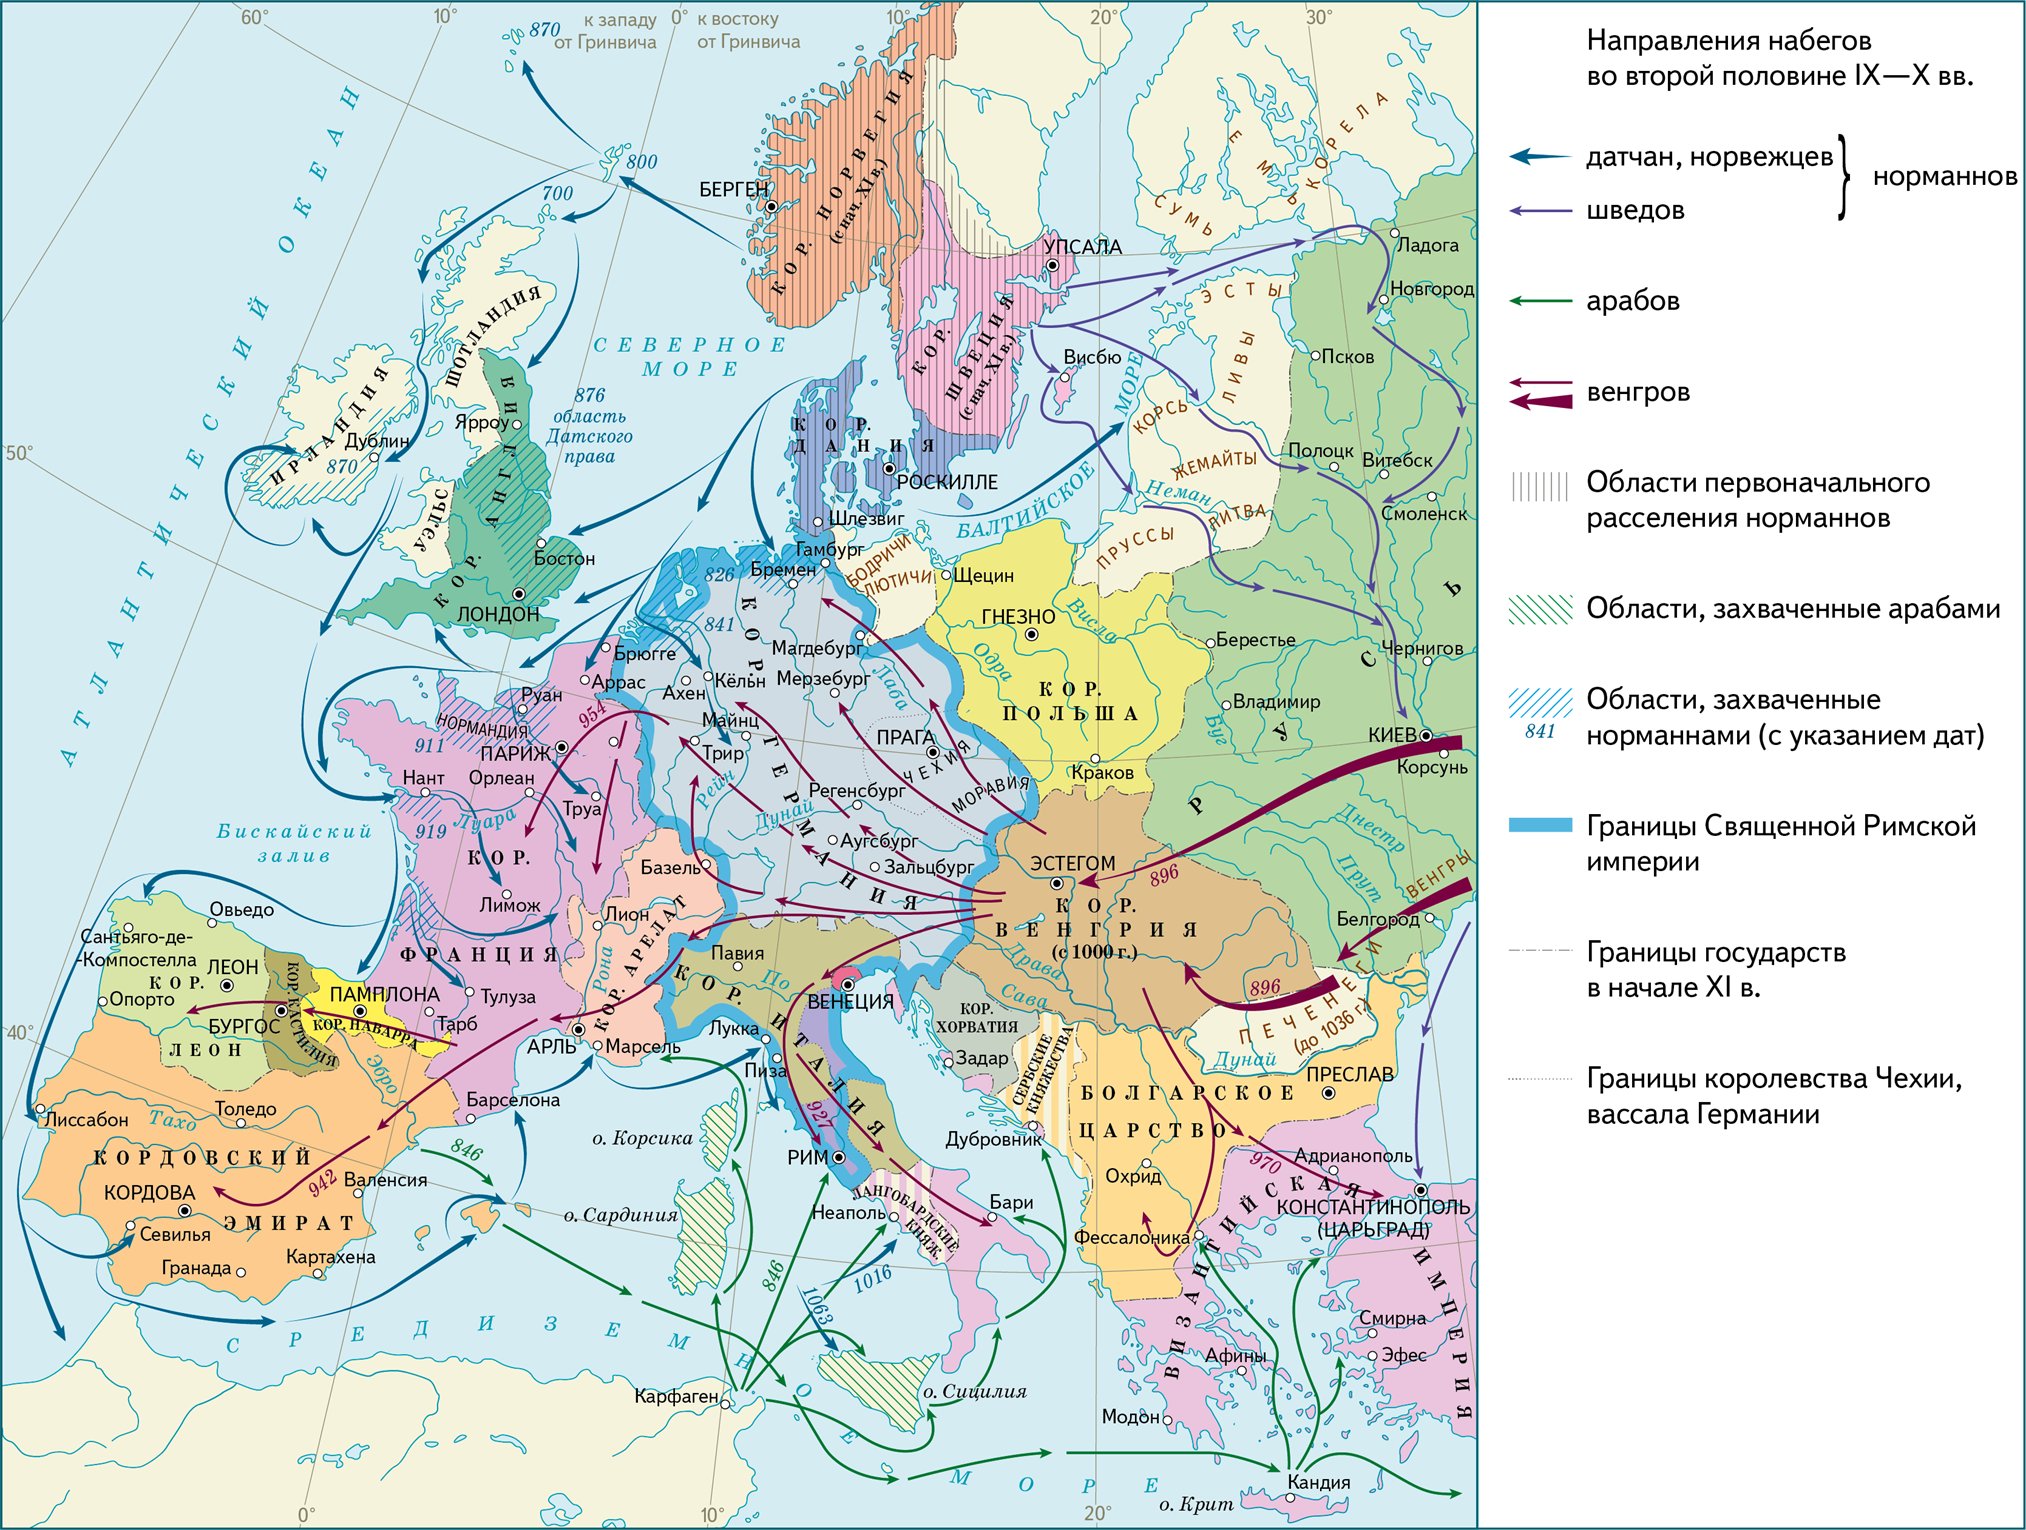 Государства европы в 9 11 веках. Завоевание норманнов в Европе 9-11 века. Завоевания норманнов в Европе в 9-11 веках карта. Карта завоевания норманнов и венгров в Европе в 9-11 веках. Карта завоевания норманнов и венгров в Европе.